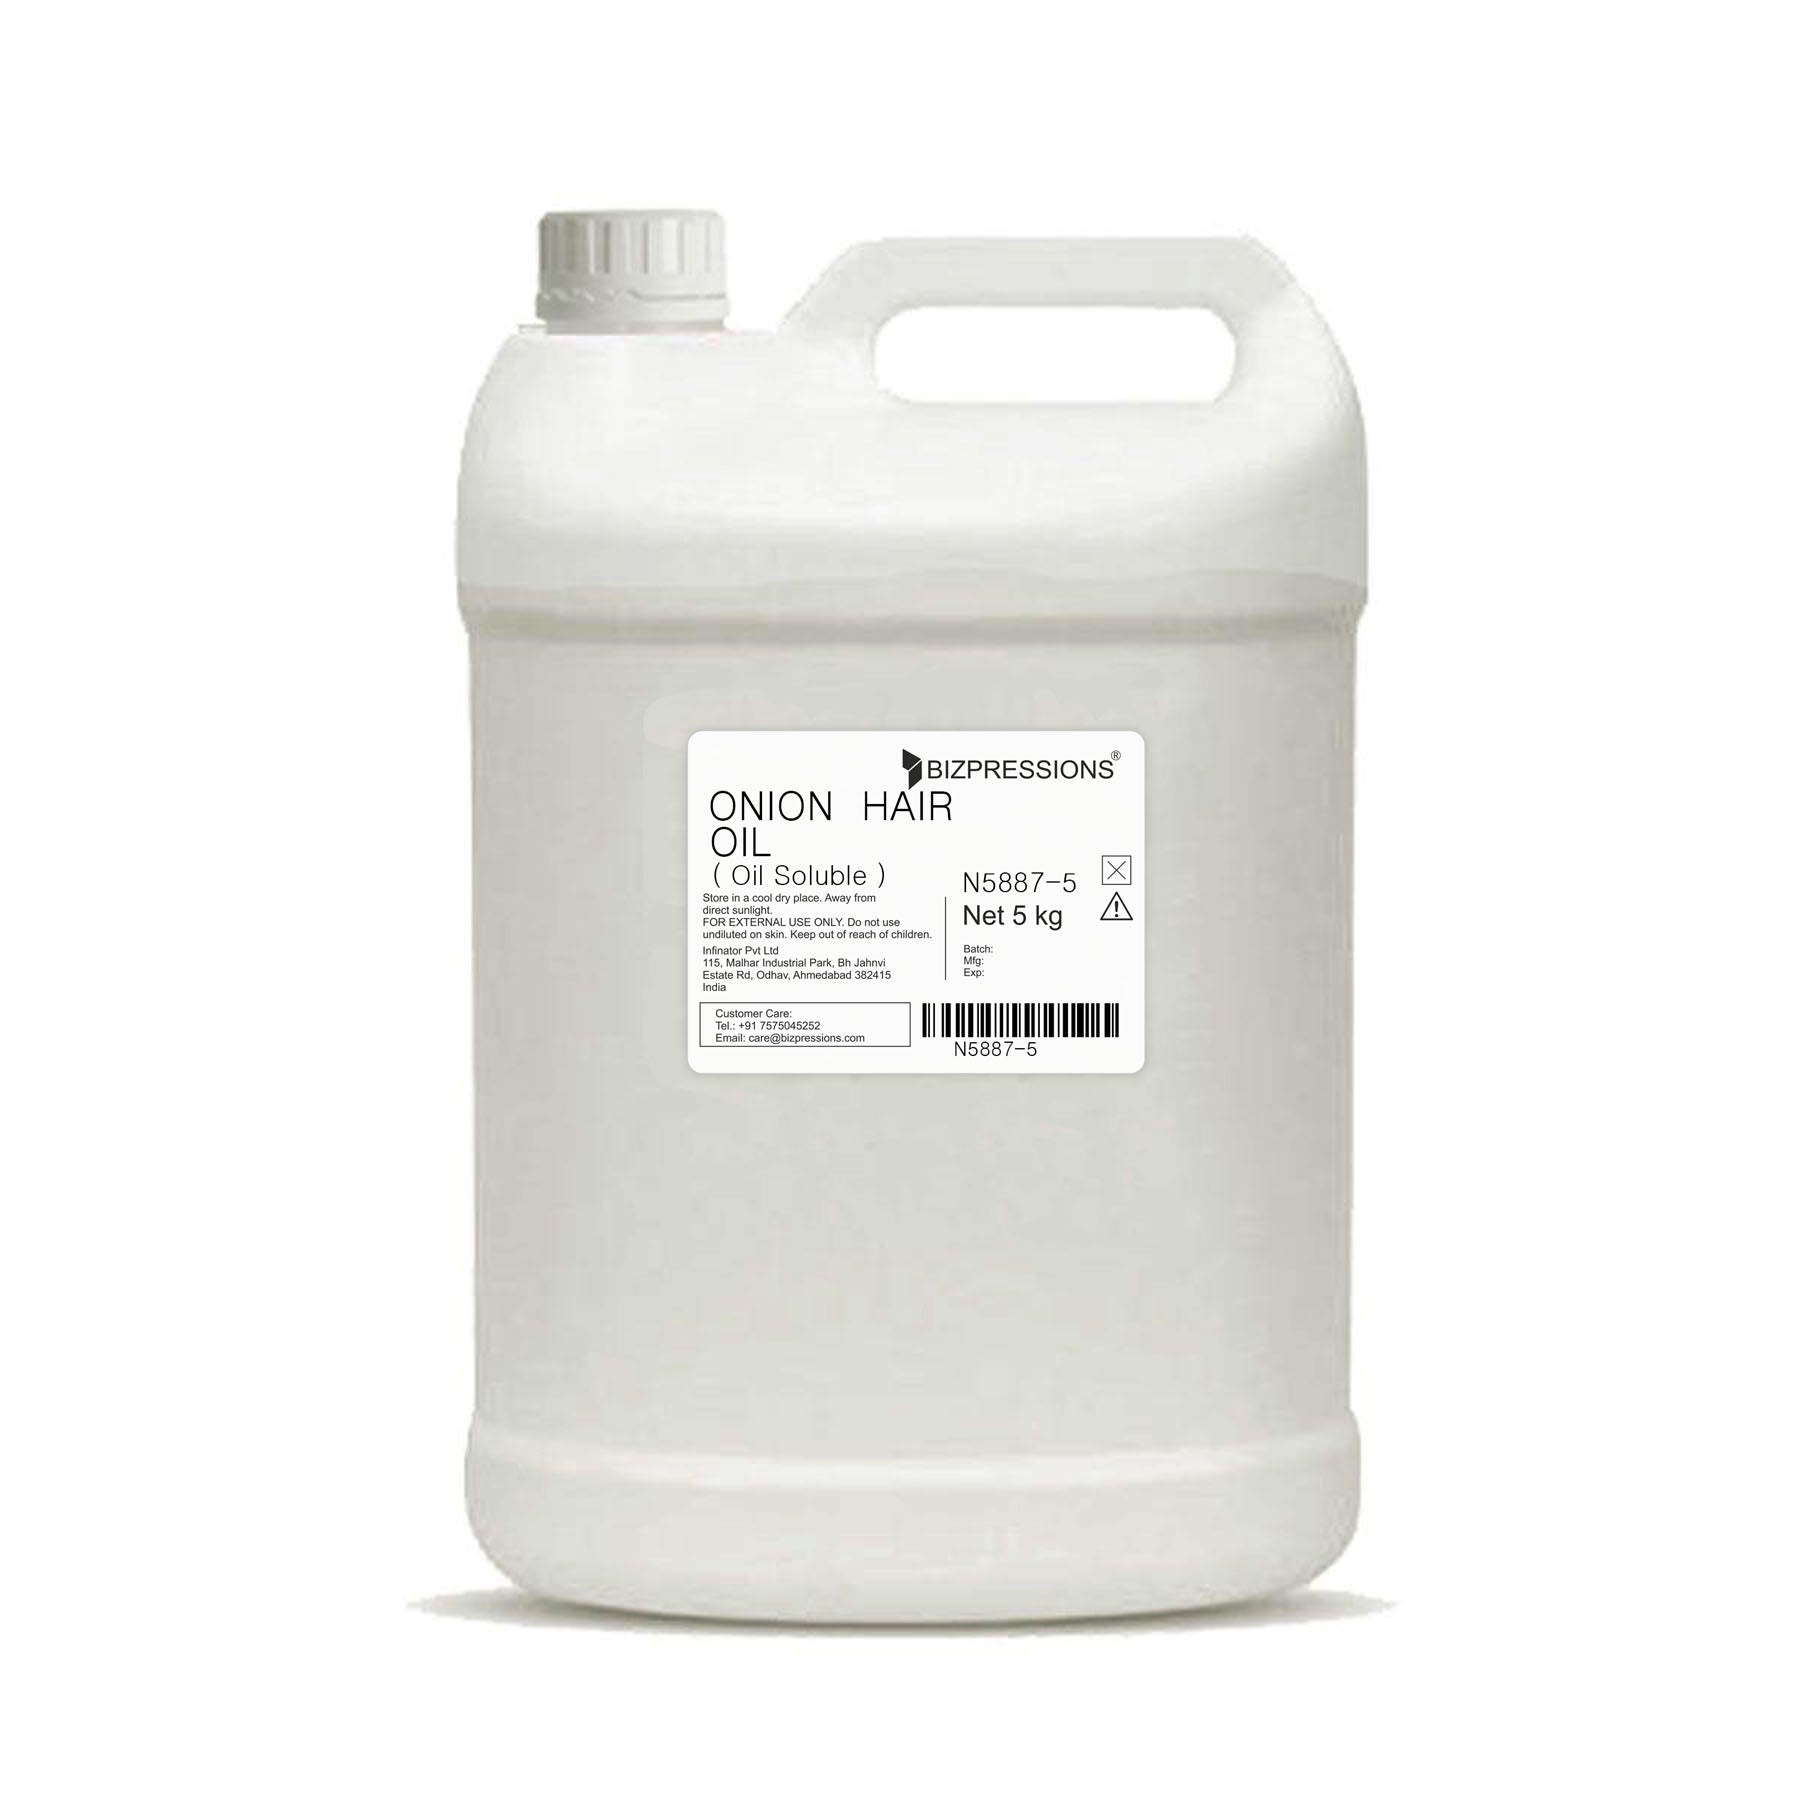 ONION HAIR OIL - Fragrance ( Oil Soluble ) - 5 kg